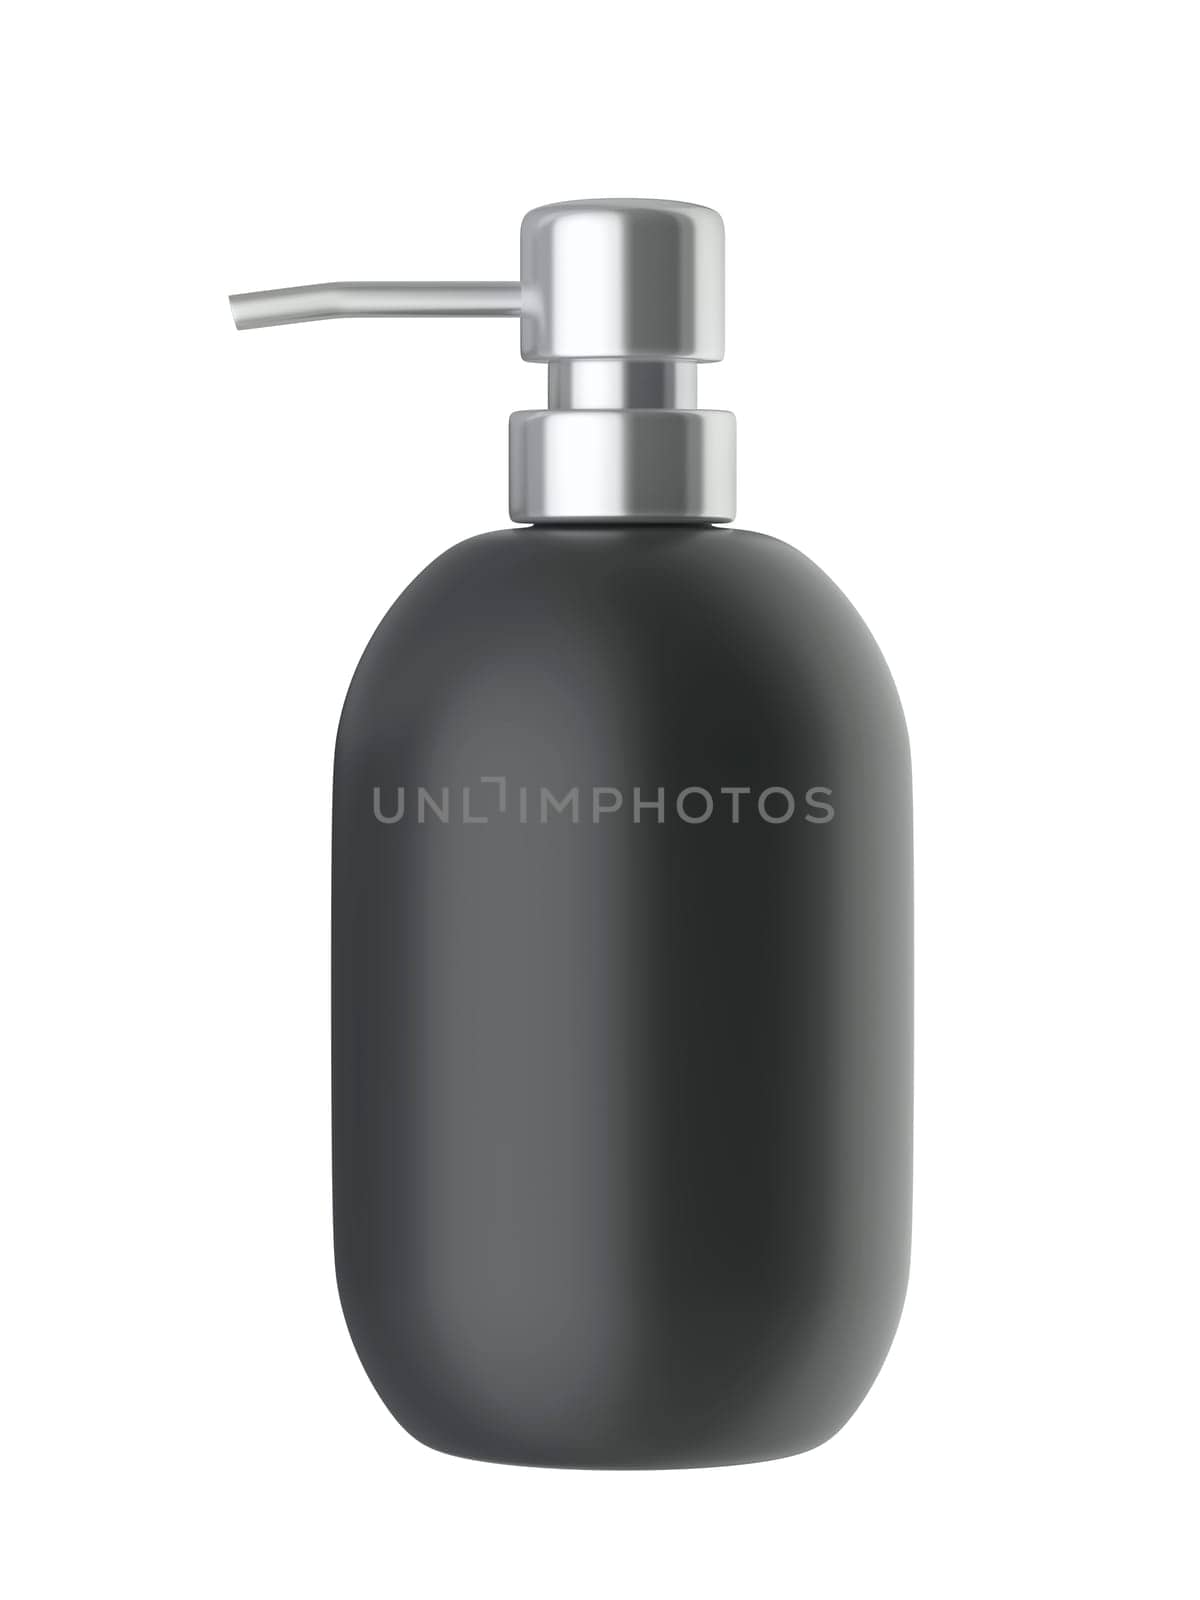 Black liquid soap bottle, isolated on white background